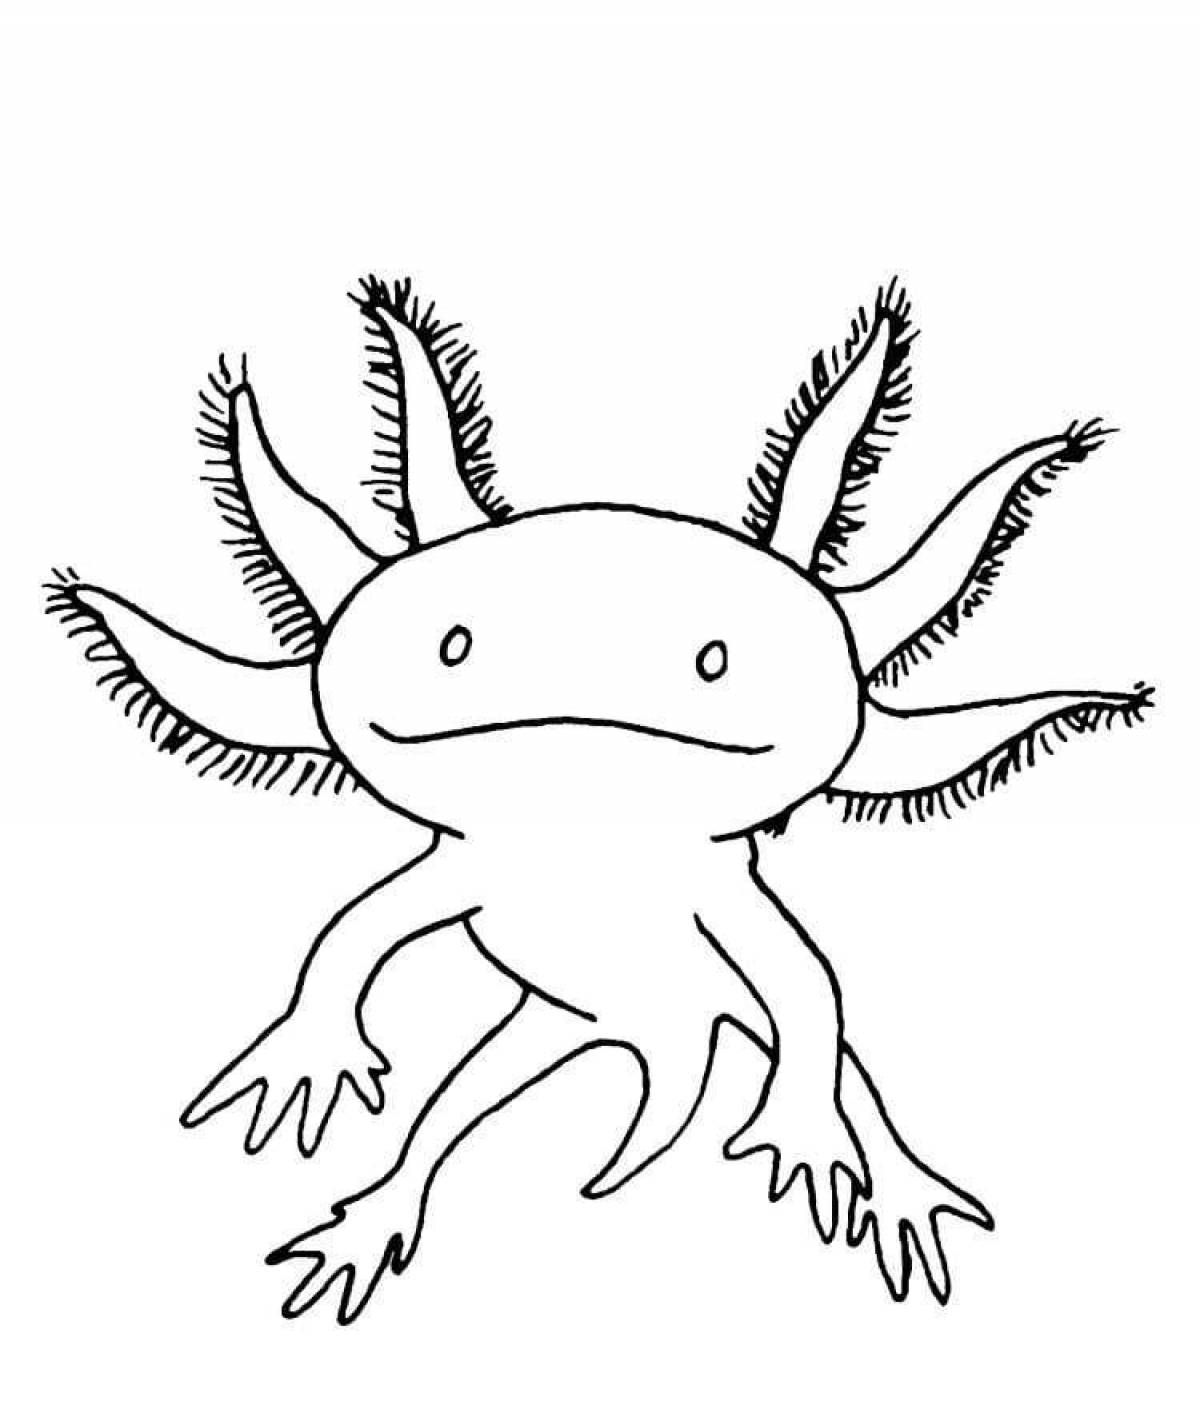 Axolotl minecraft incredible coloring book